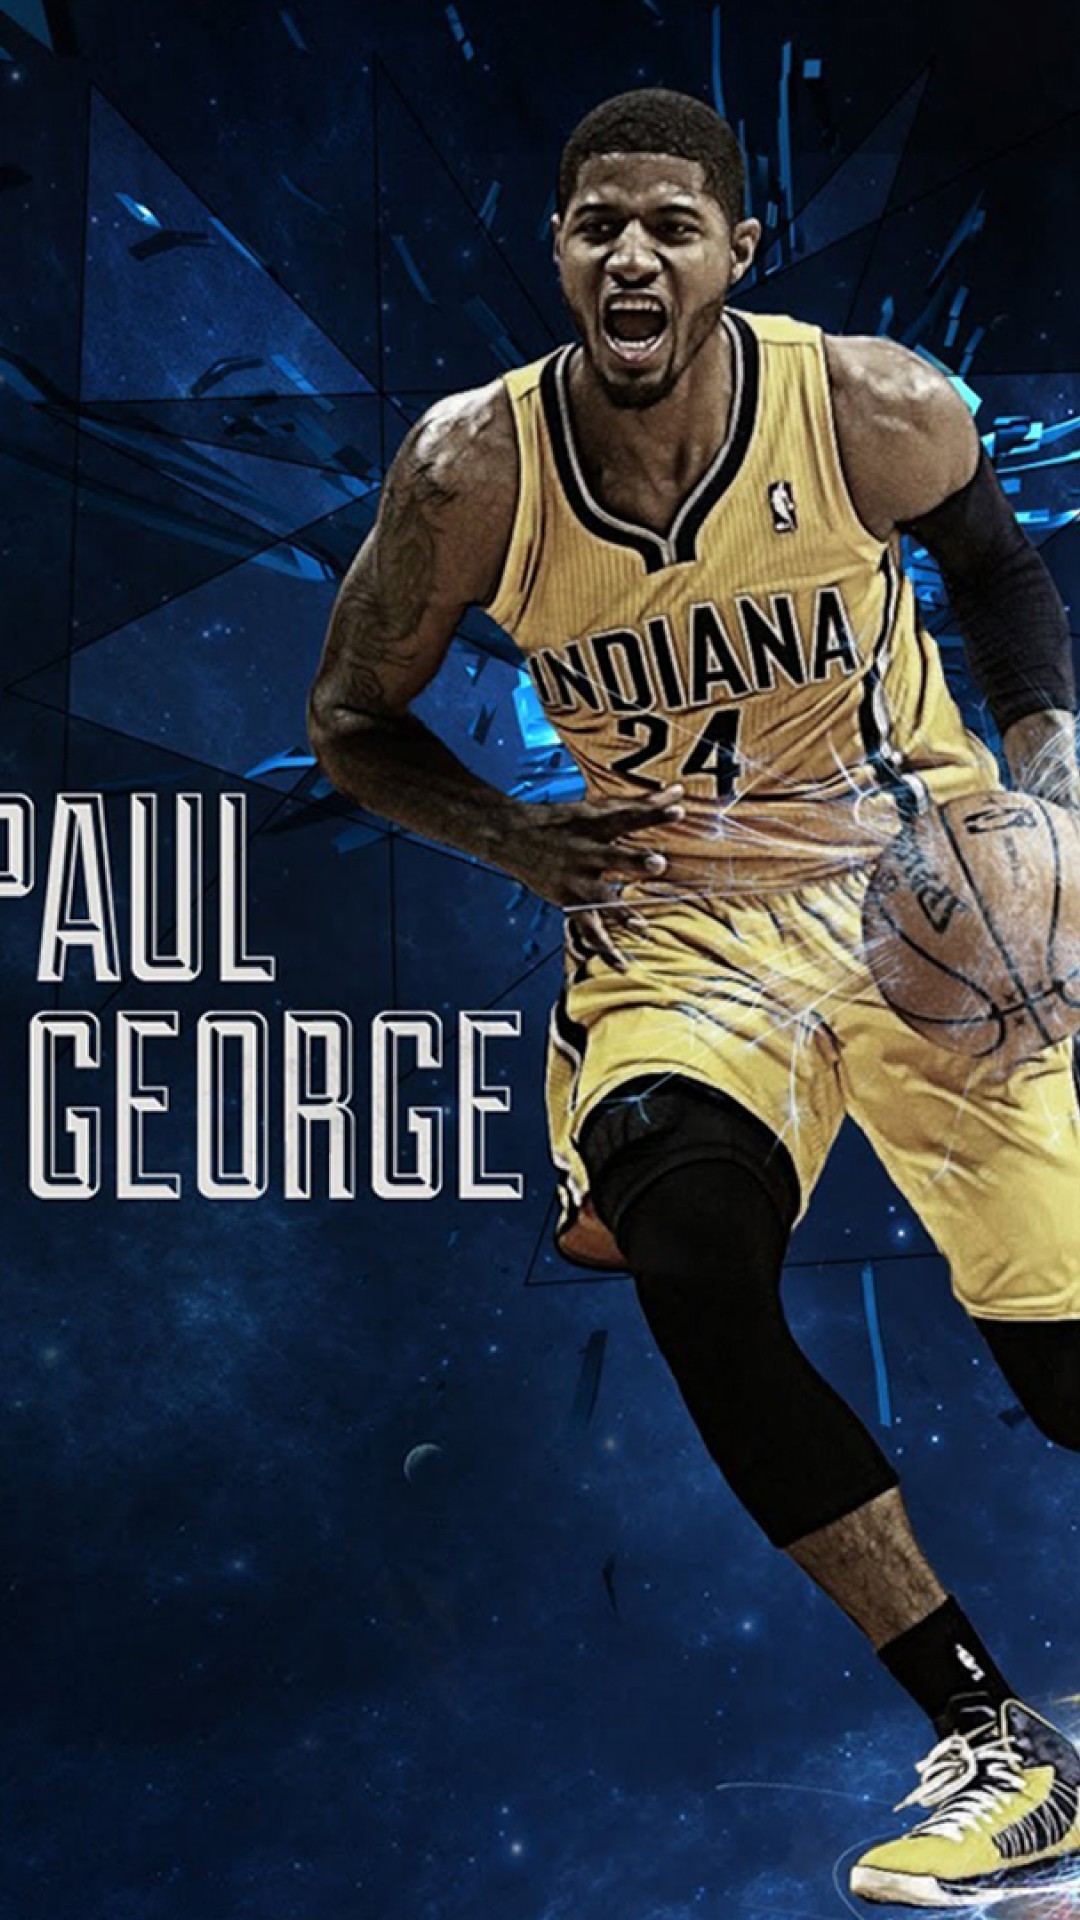 ポール・ジョージの壁紙,バスケットボール選手,バスケットボール,バスケットボールの動き,スポーツ,ポスター